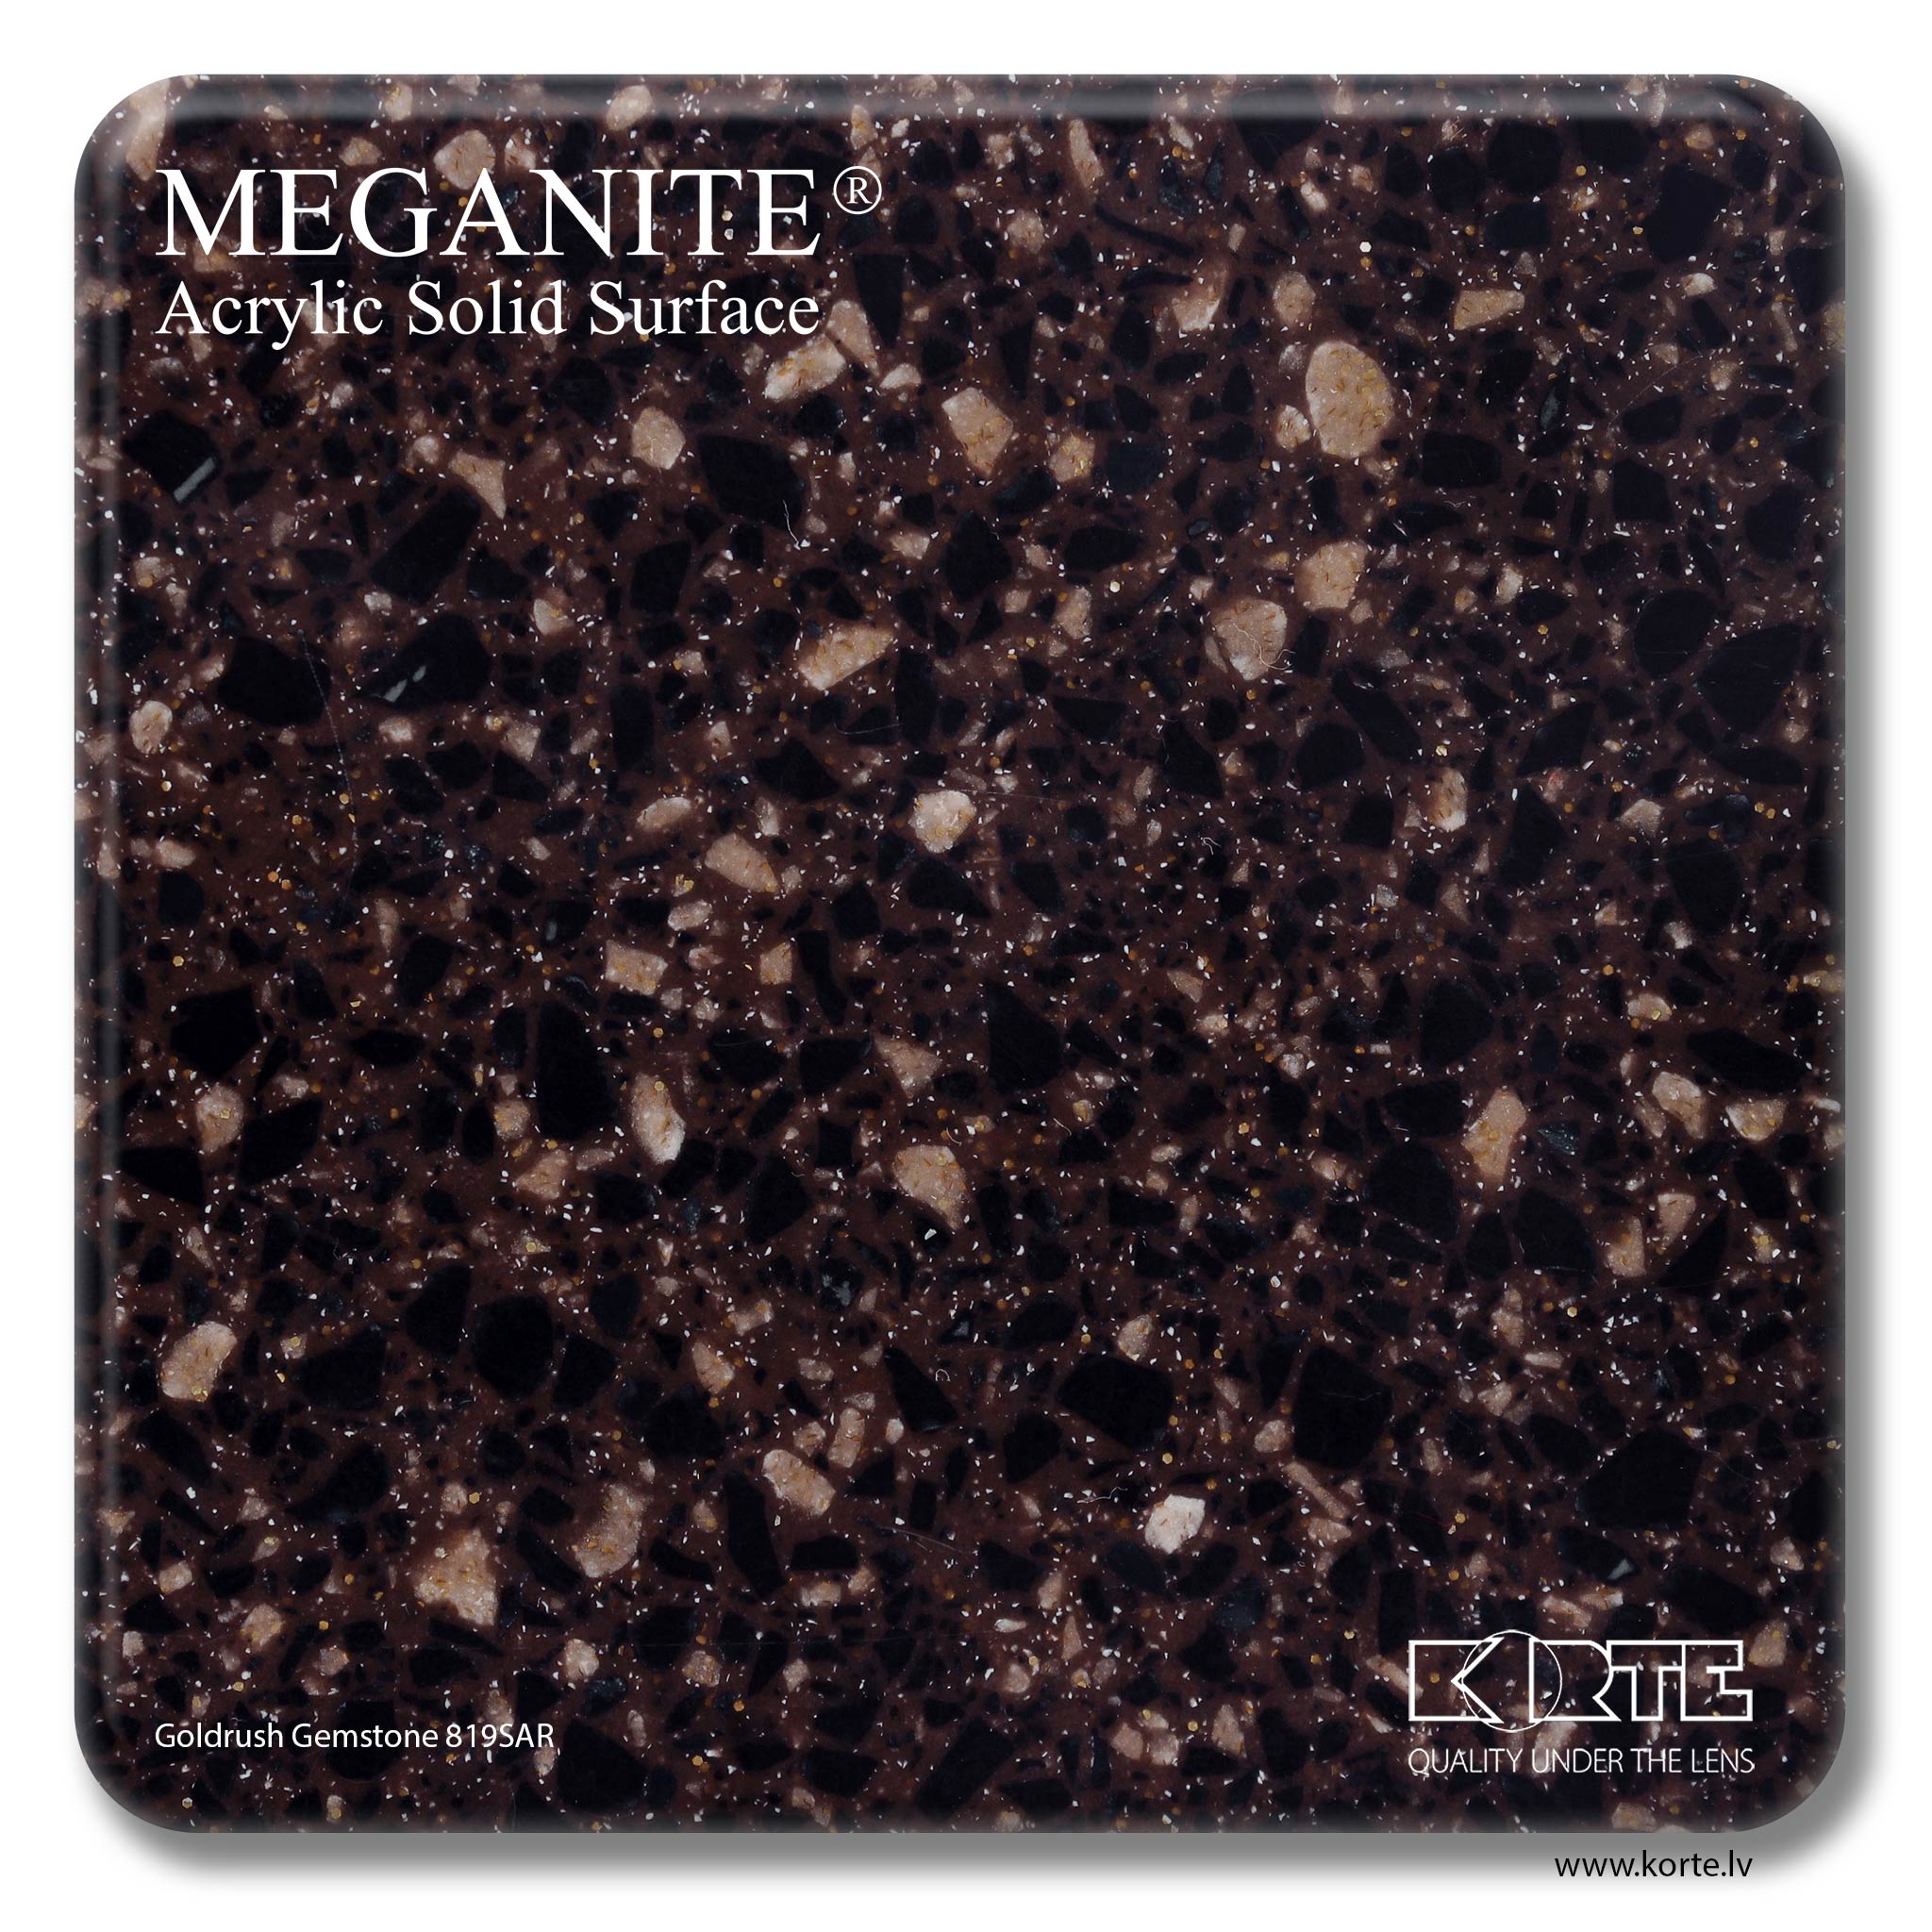 Meganite Goldrush Gemstone 819SAR